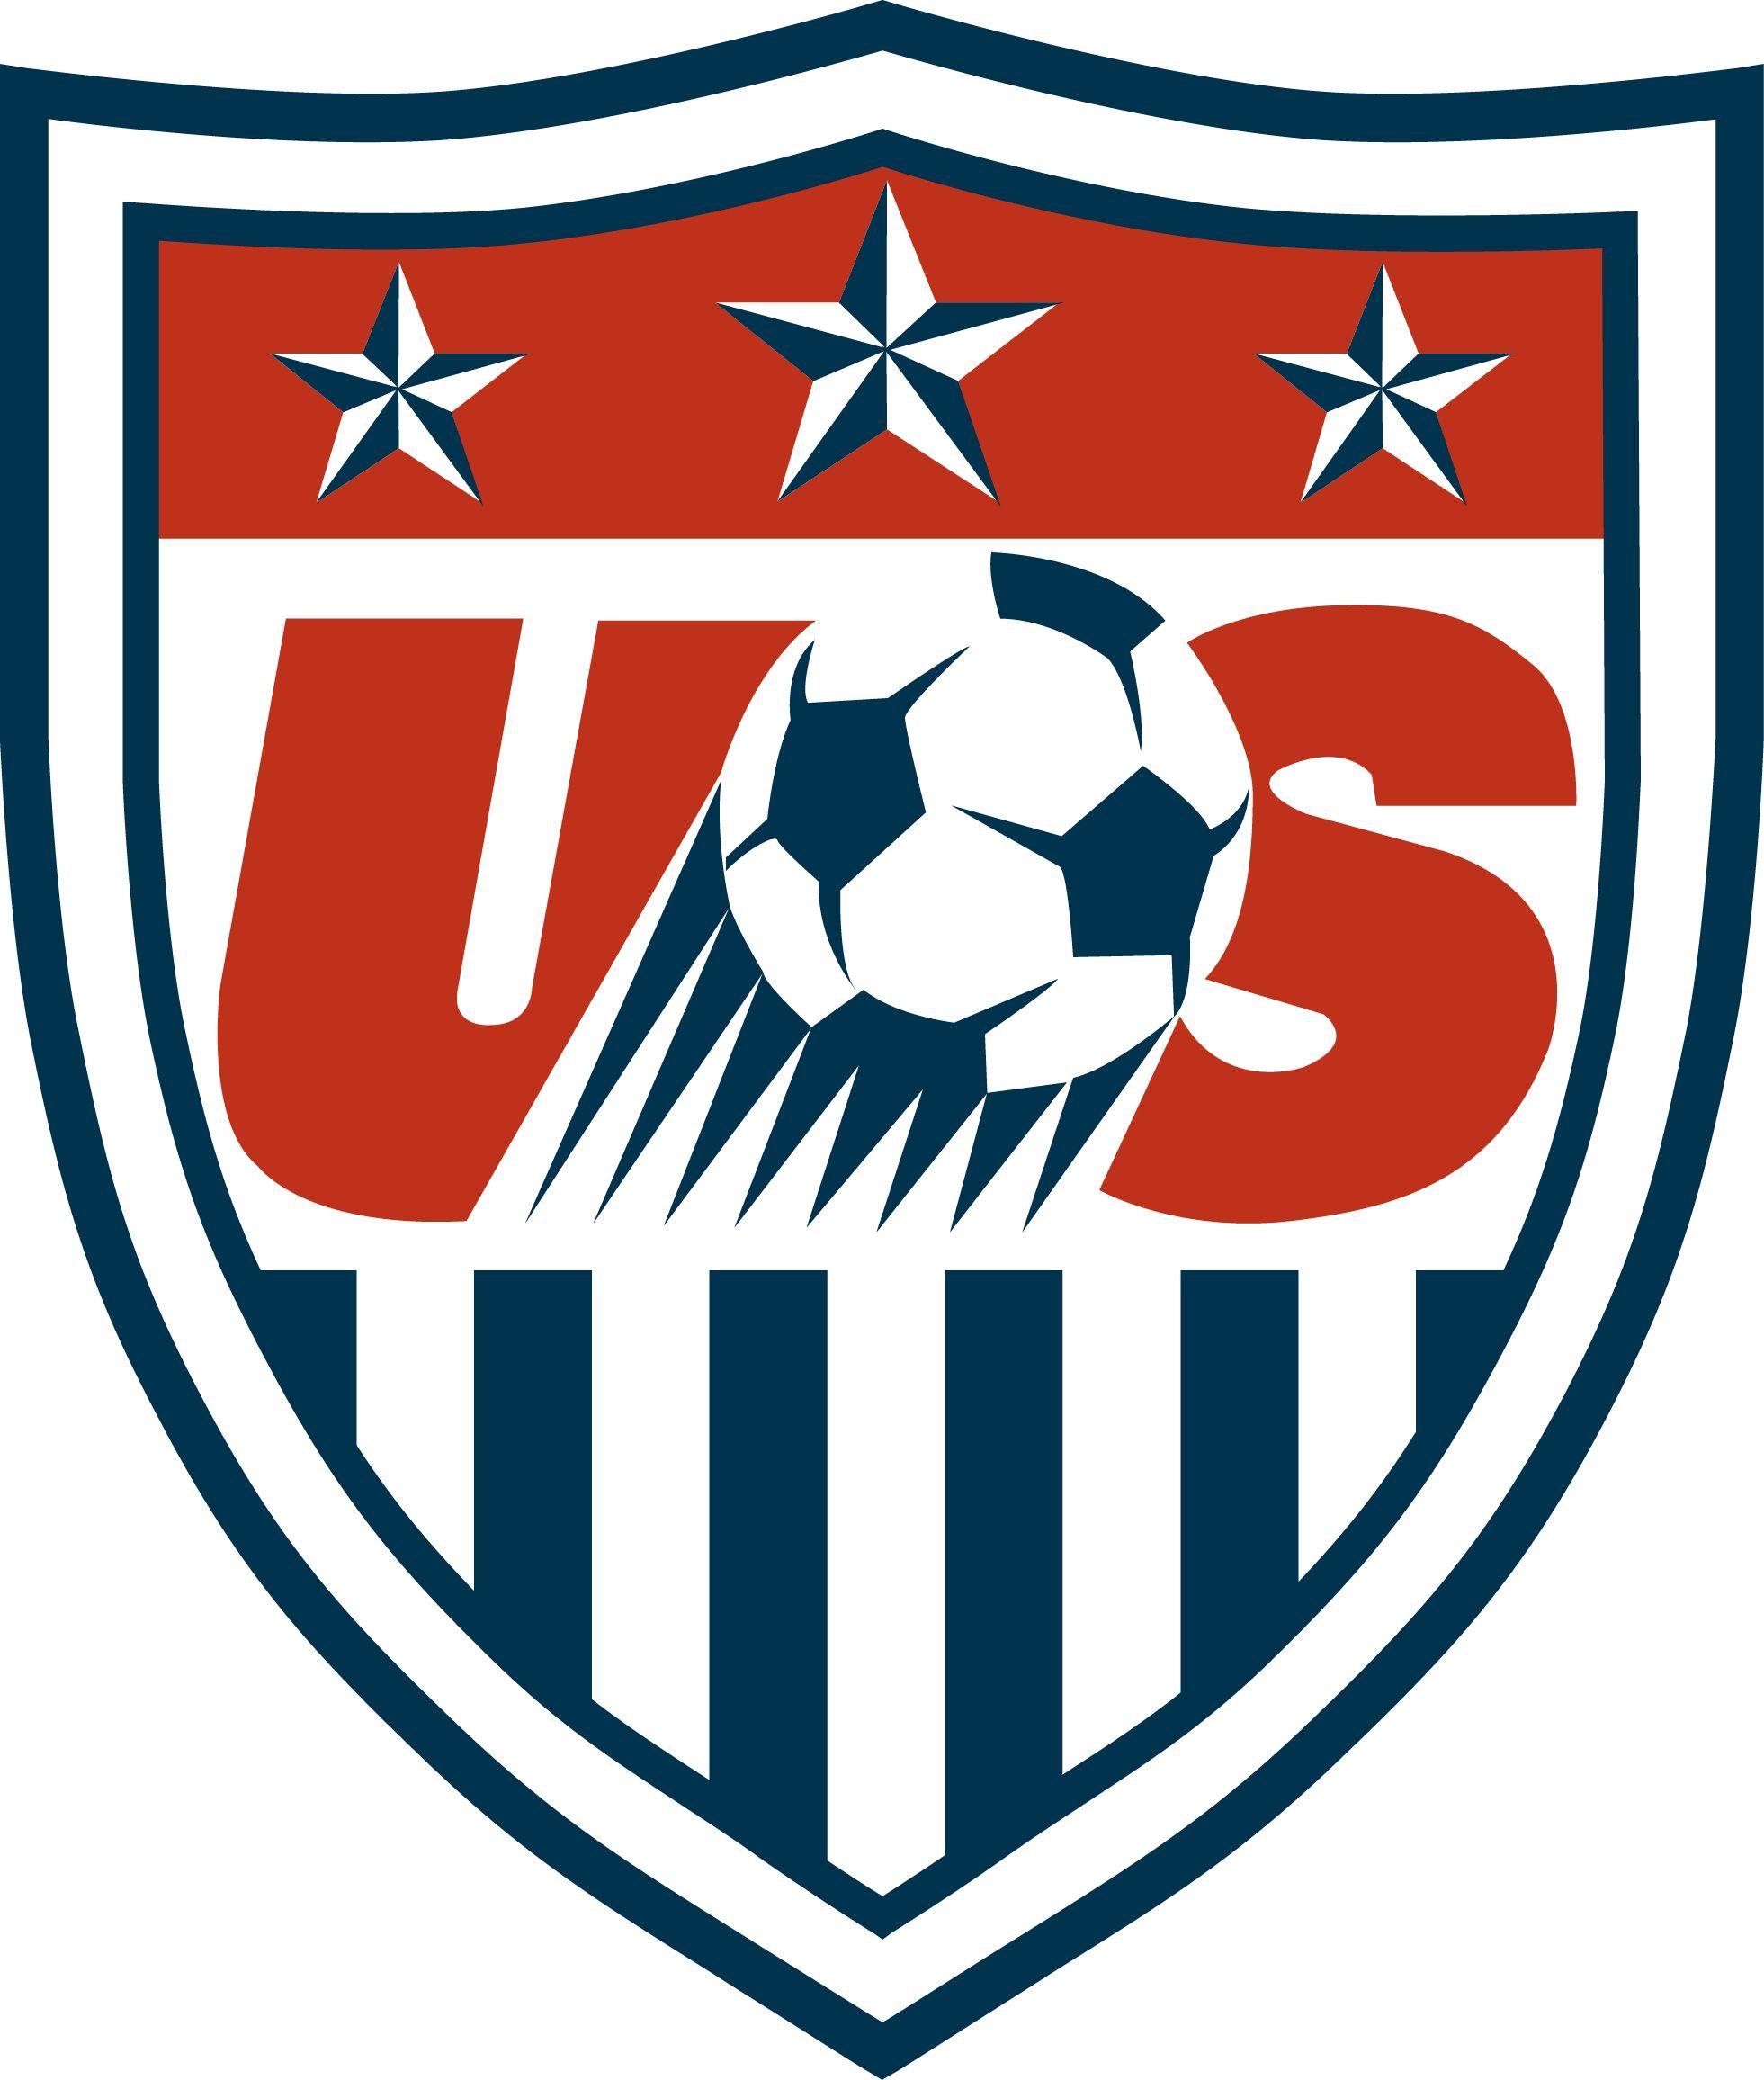 Soccer Team Logo - United States Soccer Federation & United States National Soccer Team